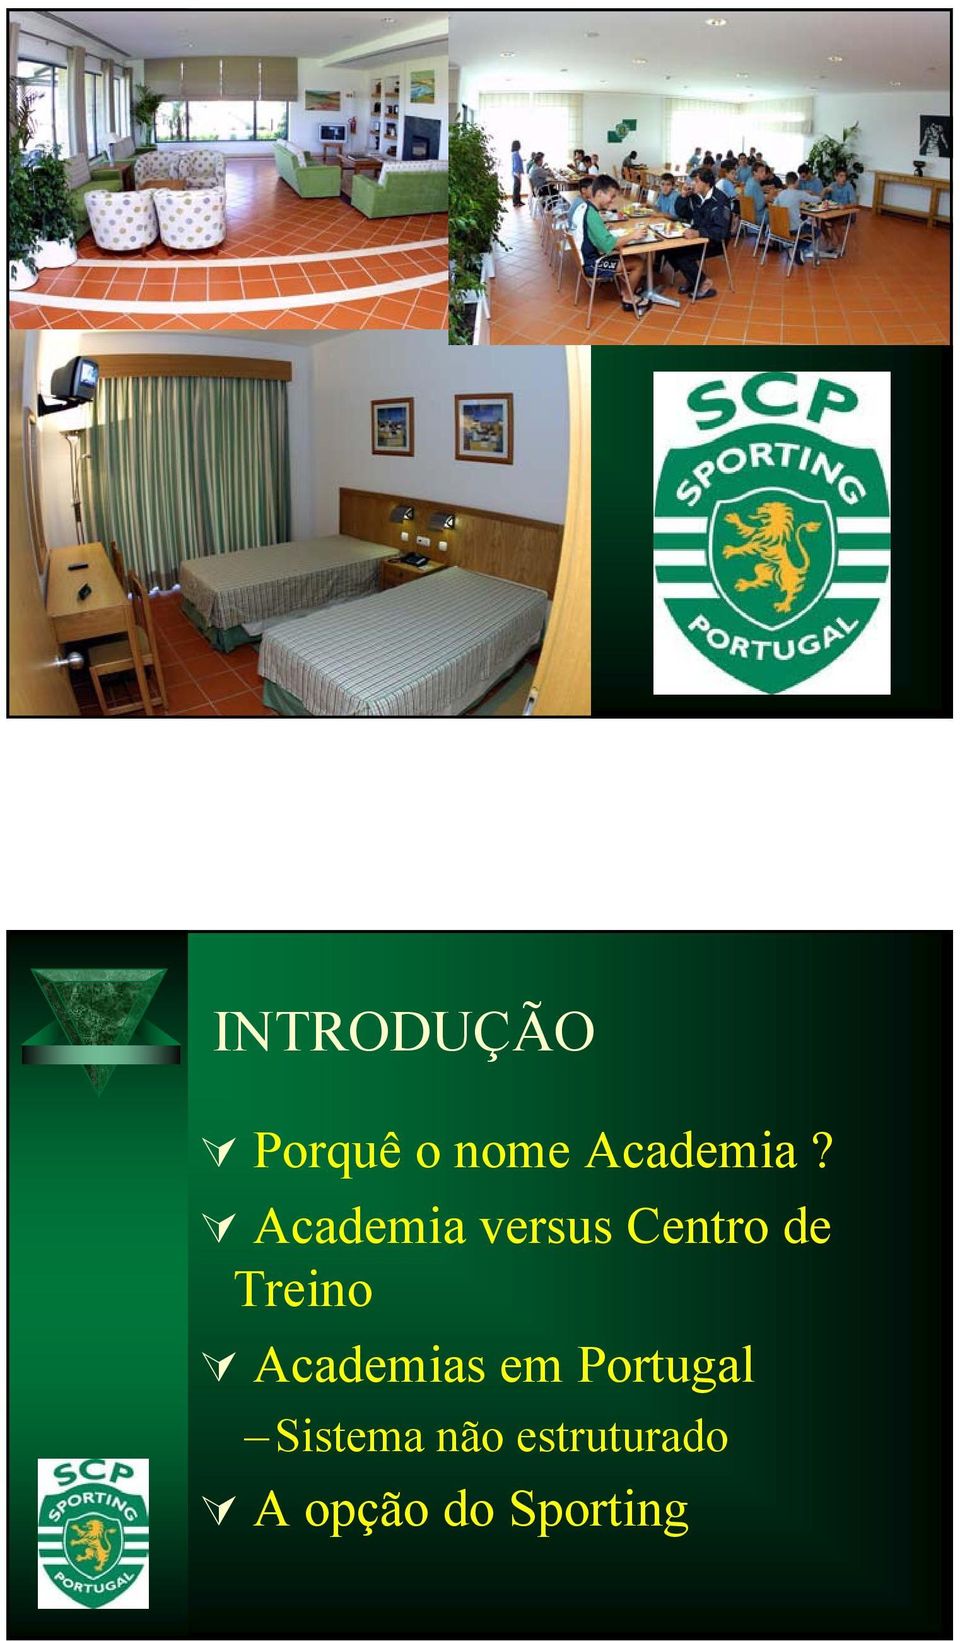 Academias em Portugal Sistema não